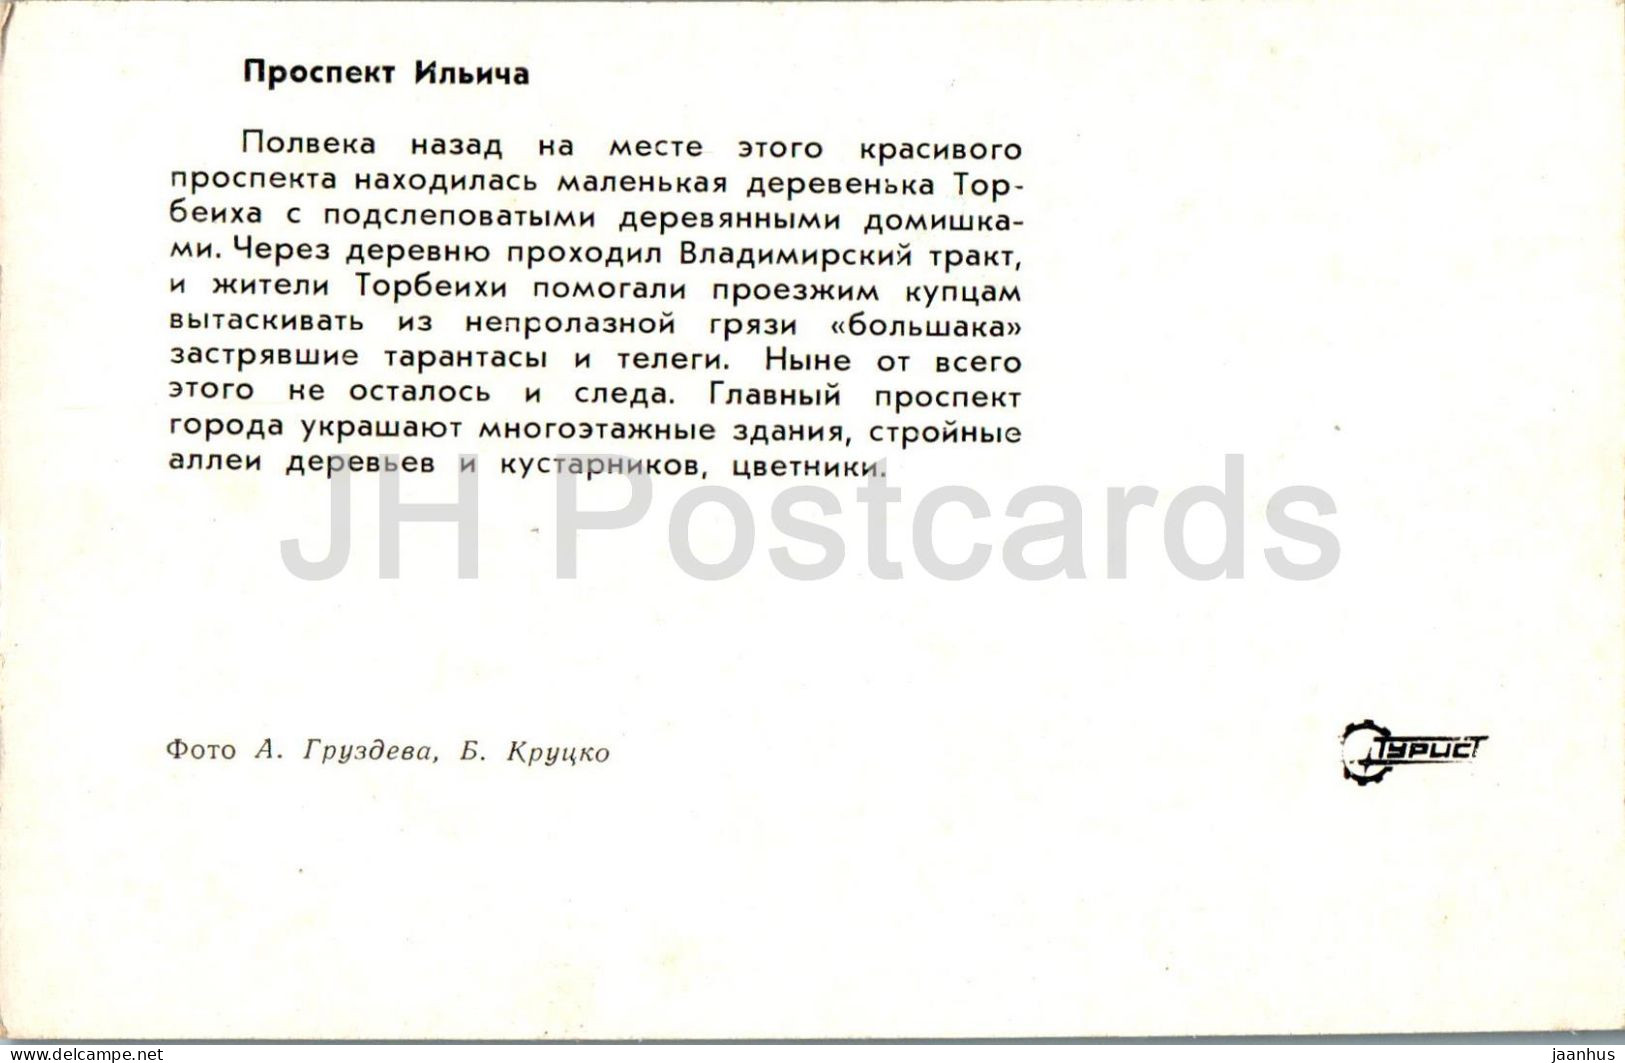 Shatura - Ilyich Prospekt - Avenue - Turist - 1975 - Russia USSR - Unused - Rusland